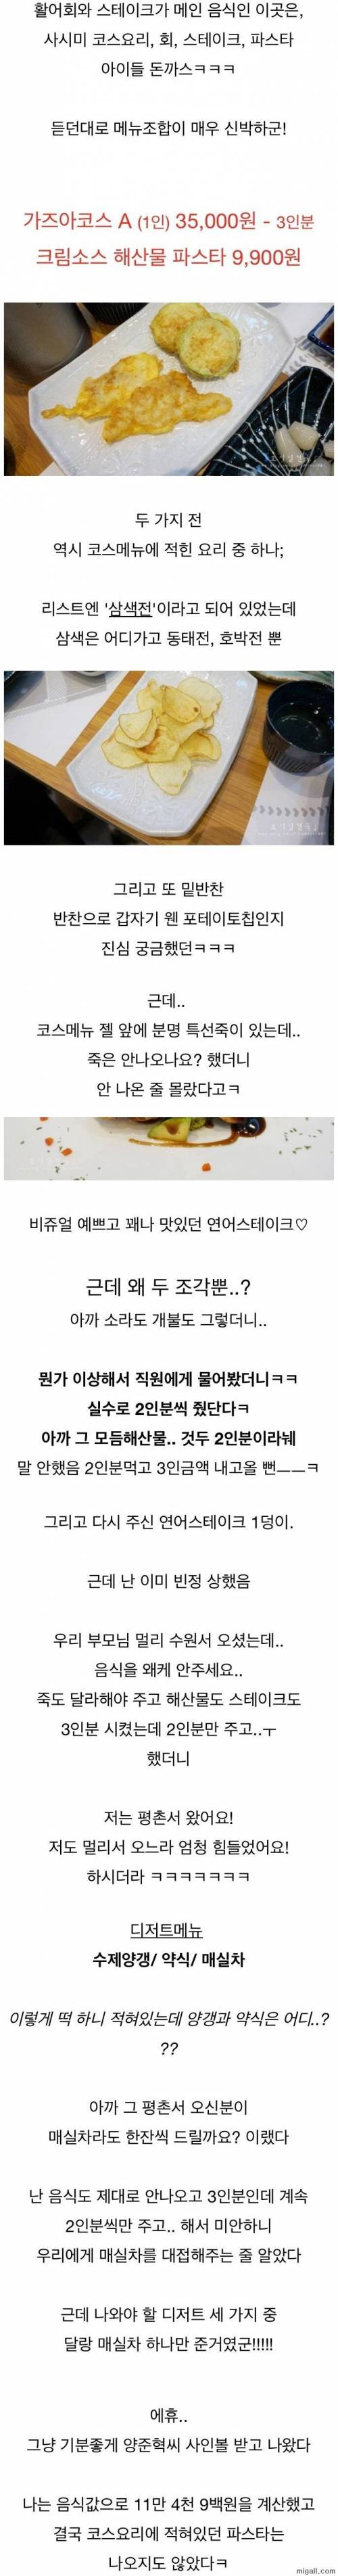 양준혁 식당 가즈아 후기.jpg